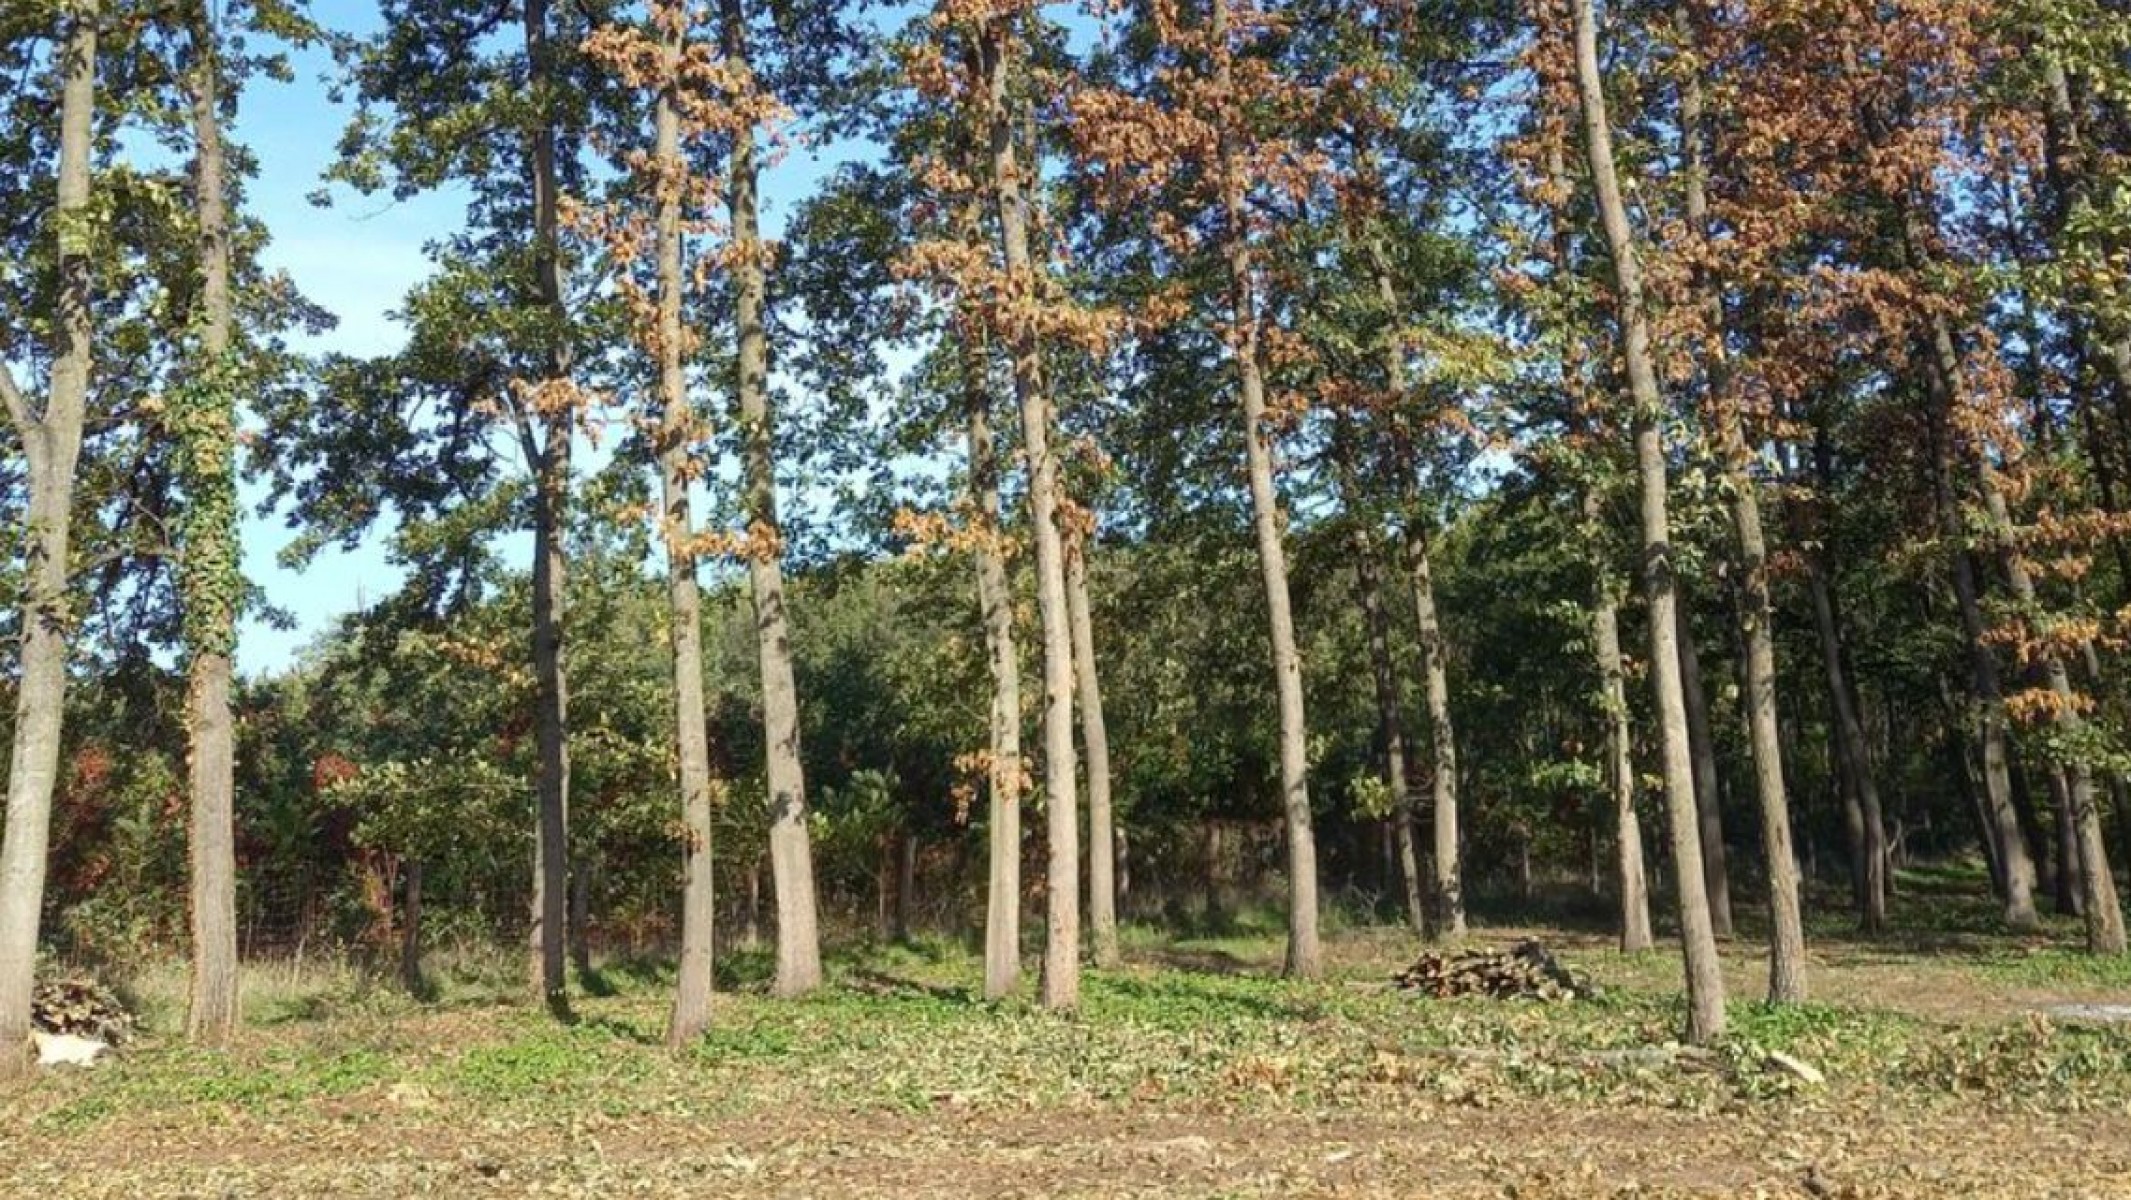 Két díszbogárfaj károsítása miatt zajlik fakitermelés Pósteleken